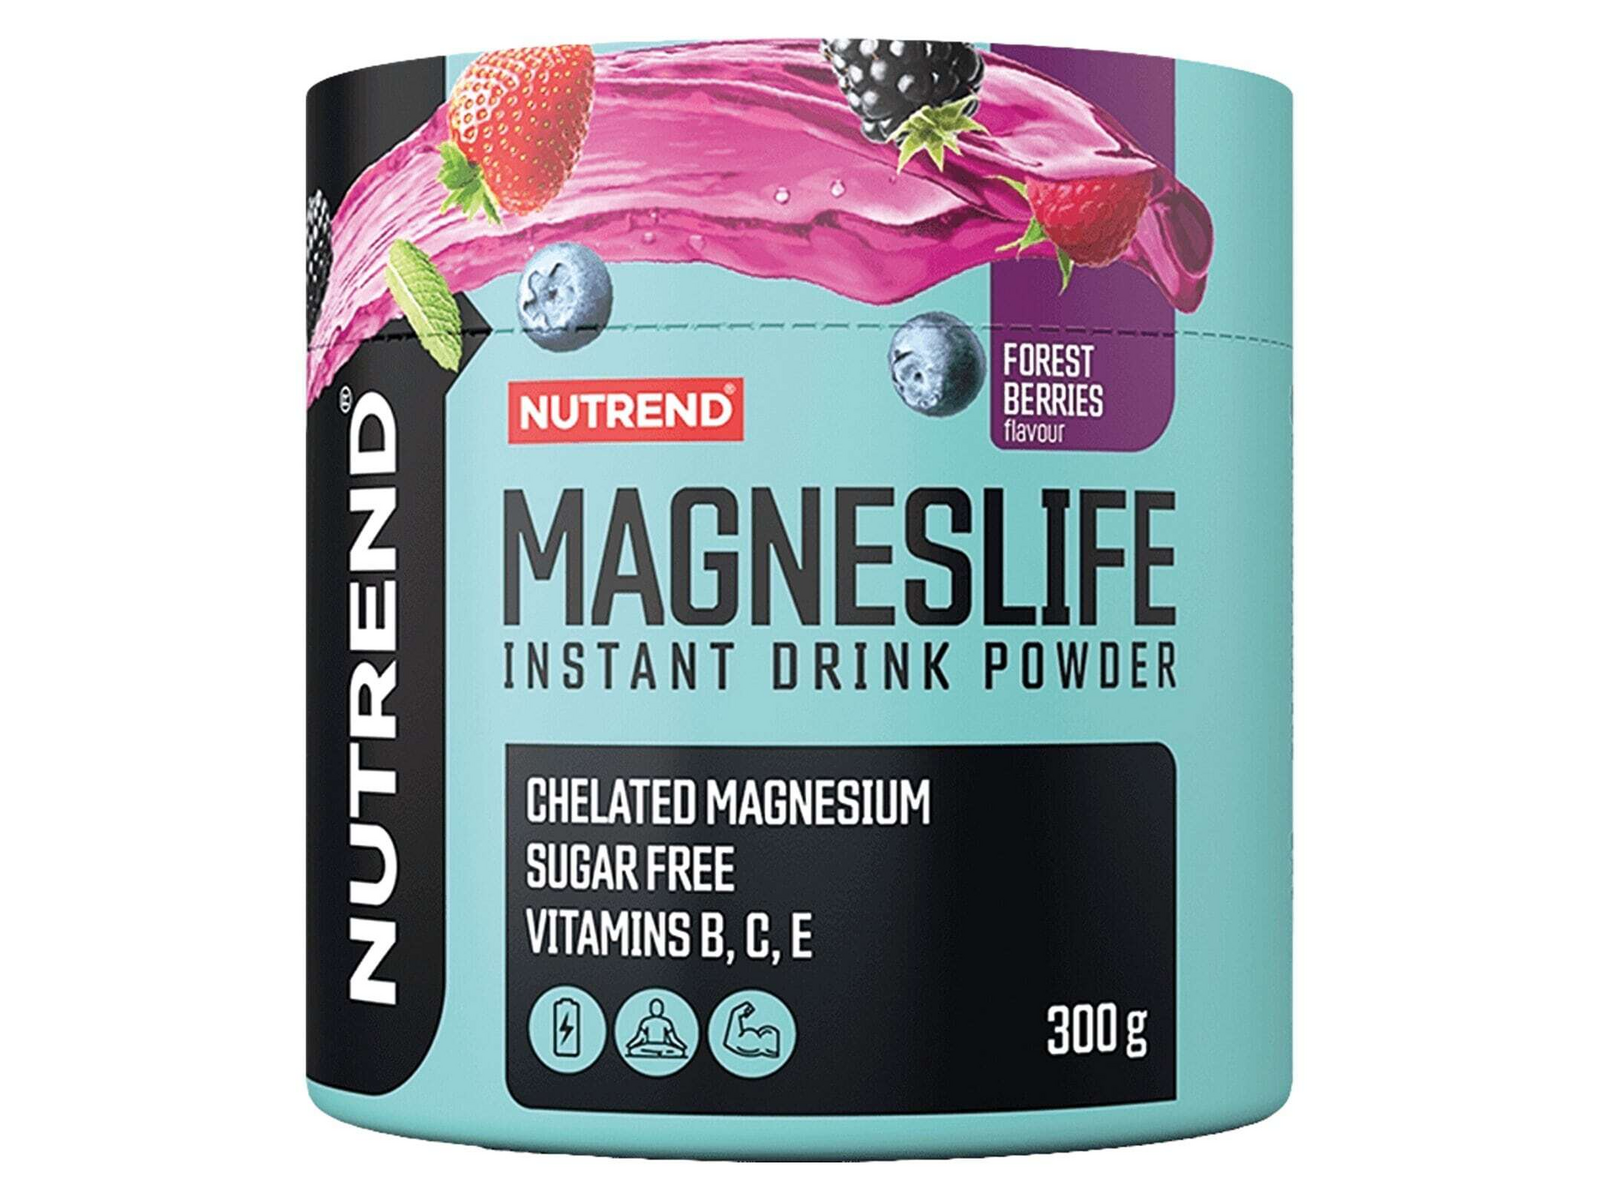 Magneslife Instant Drink Powder (Forest Berries - 300 gram) - NUTREND